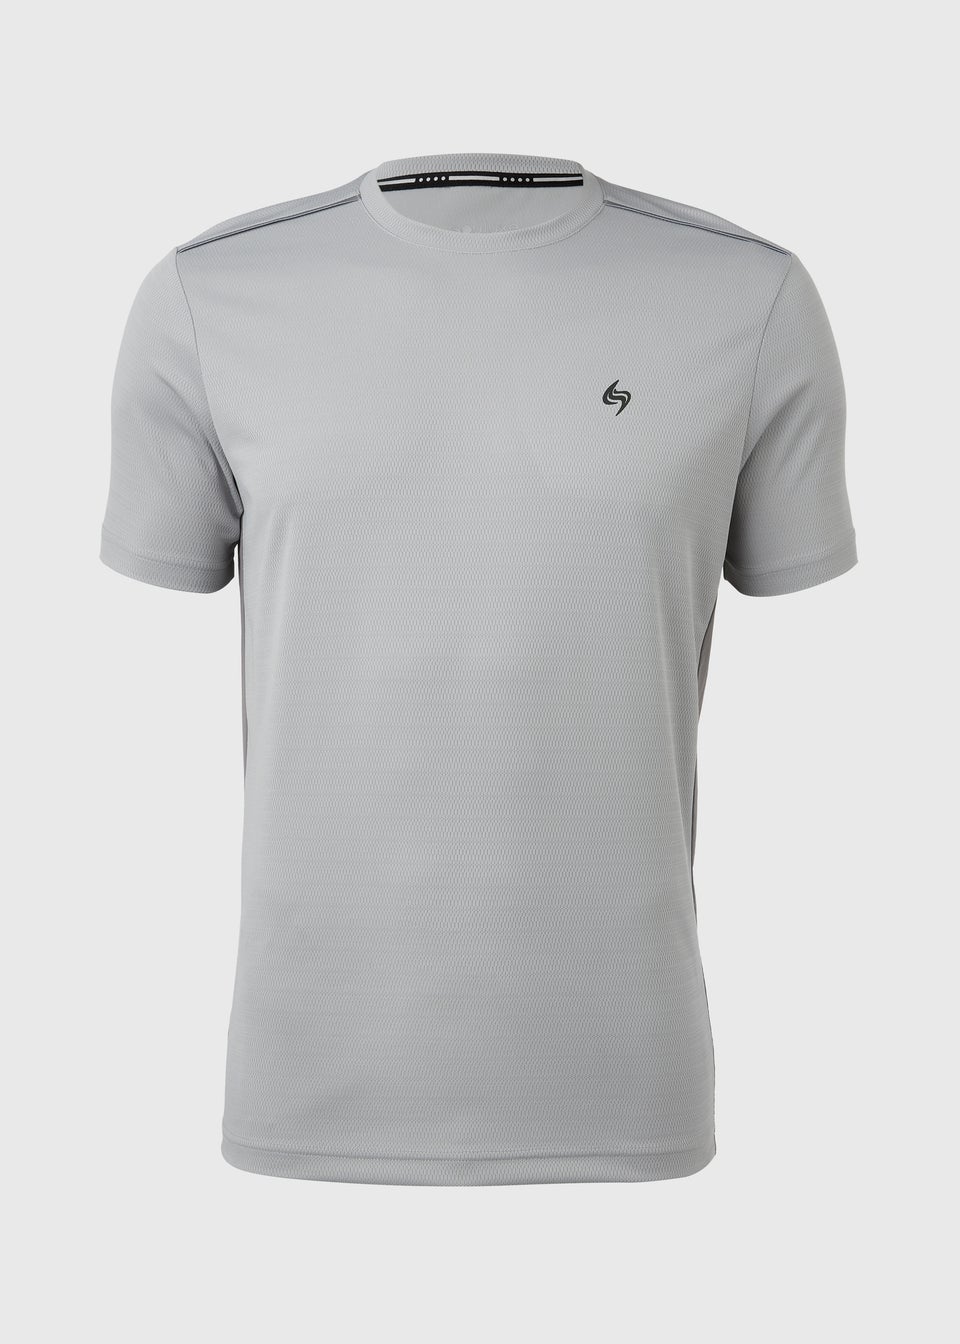 Souluxe Light Grey T-Shirt